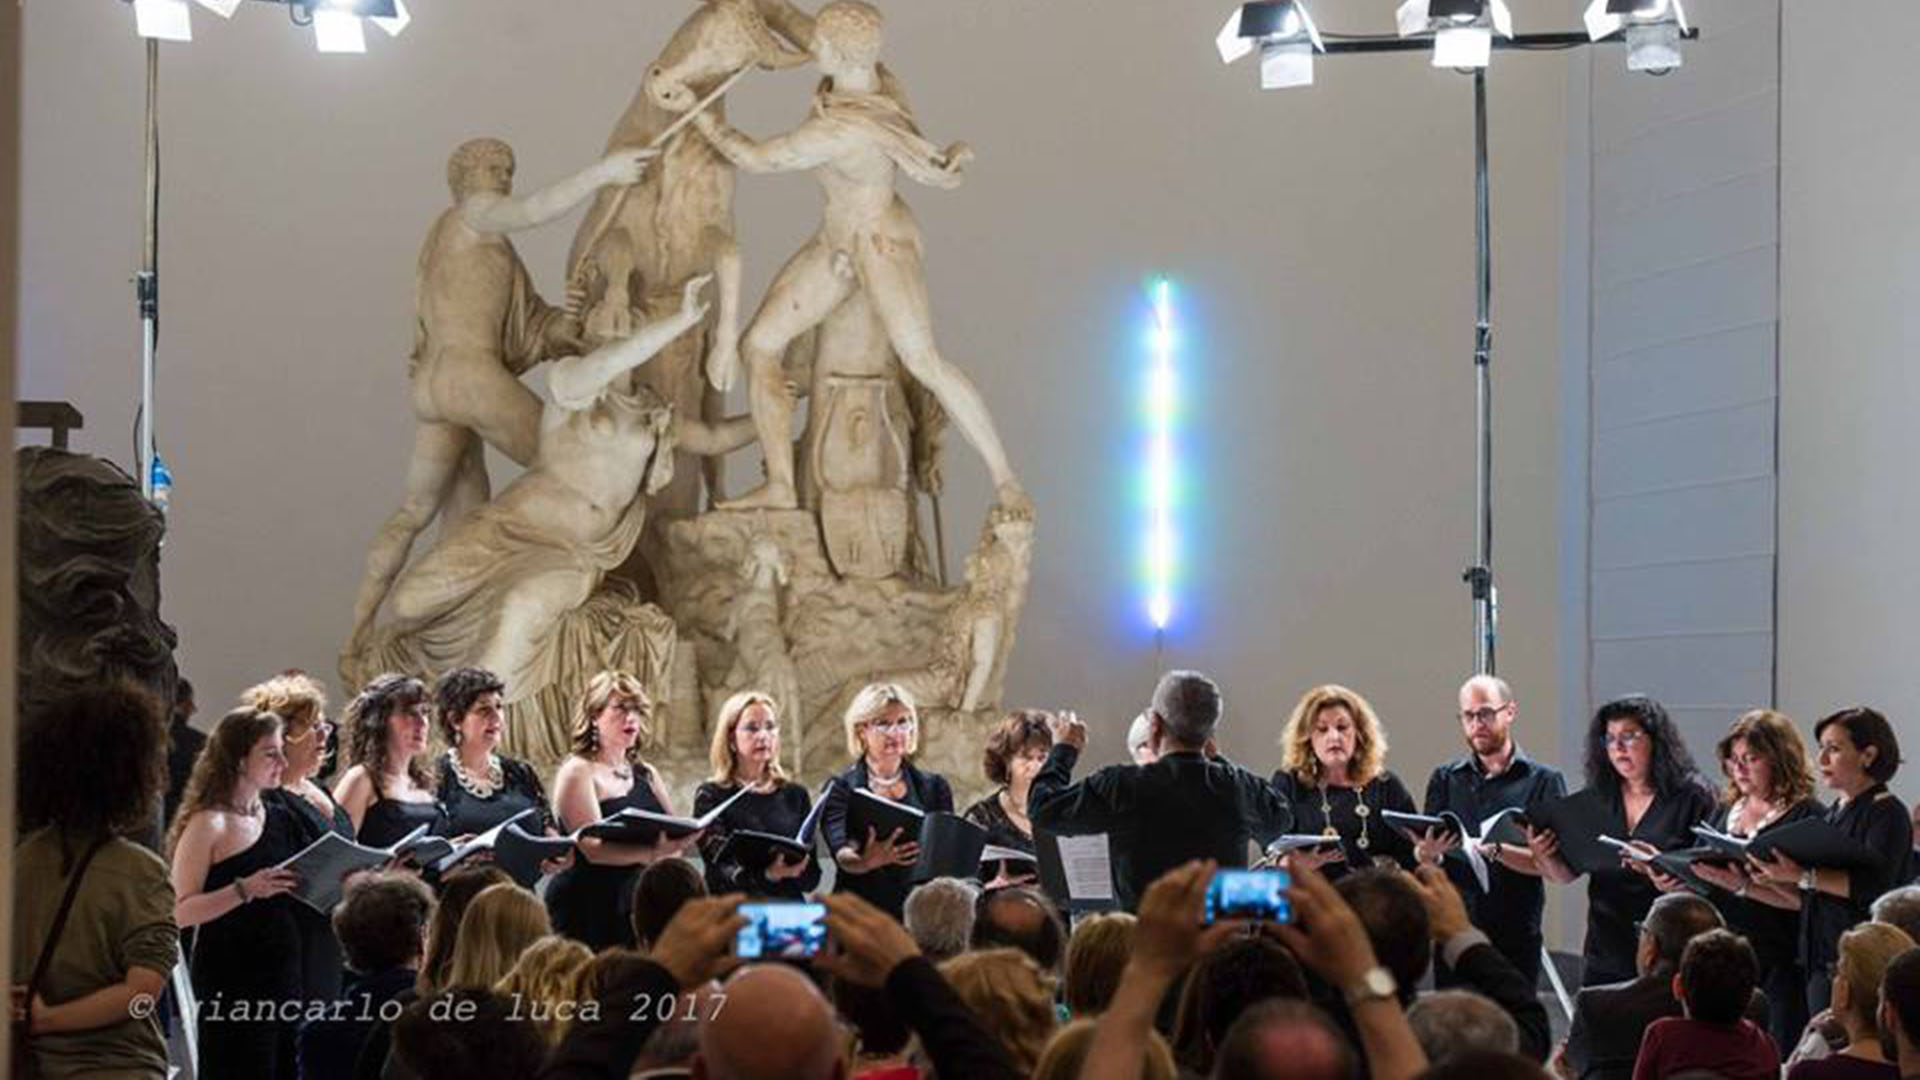 Ensemble Vocale di Napoli al Museo Archeologico per Miti di Musica